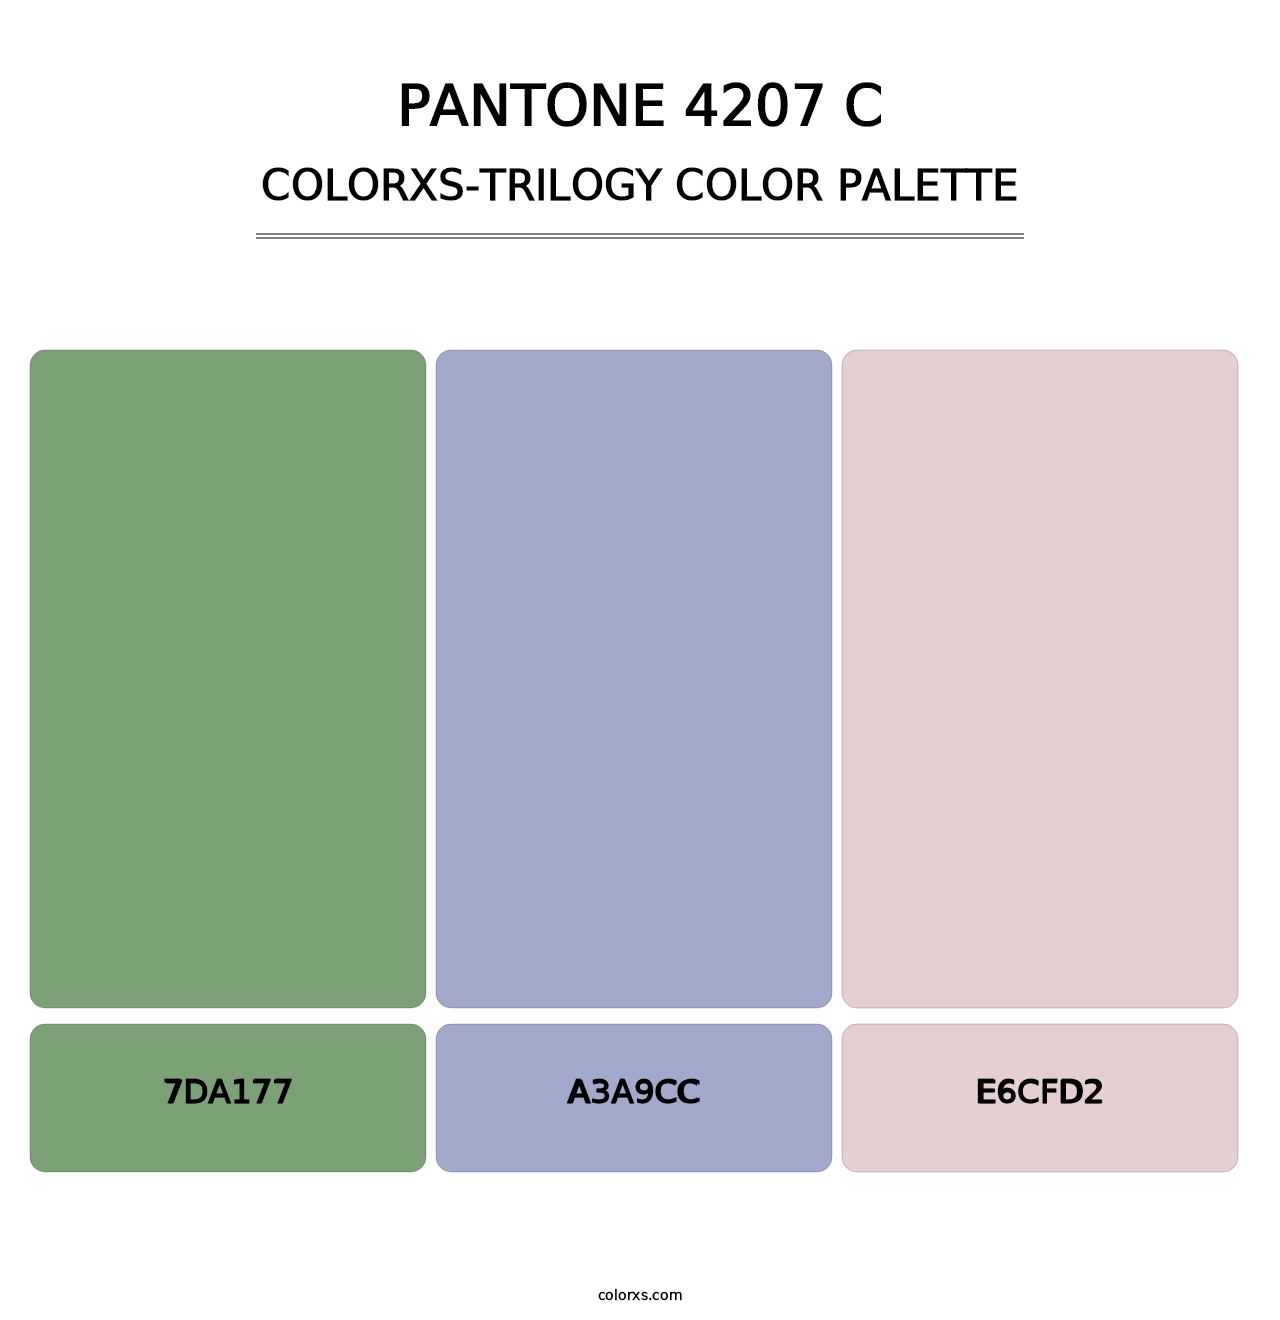 PANTONE 4207 C - Colorxs Trilogy Palette